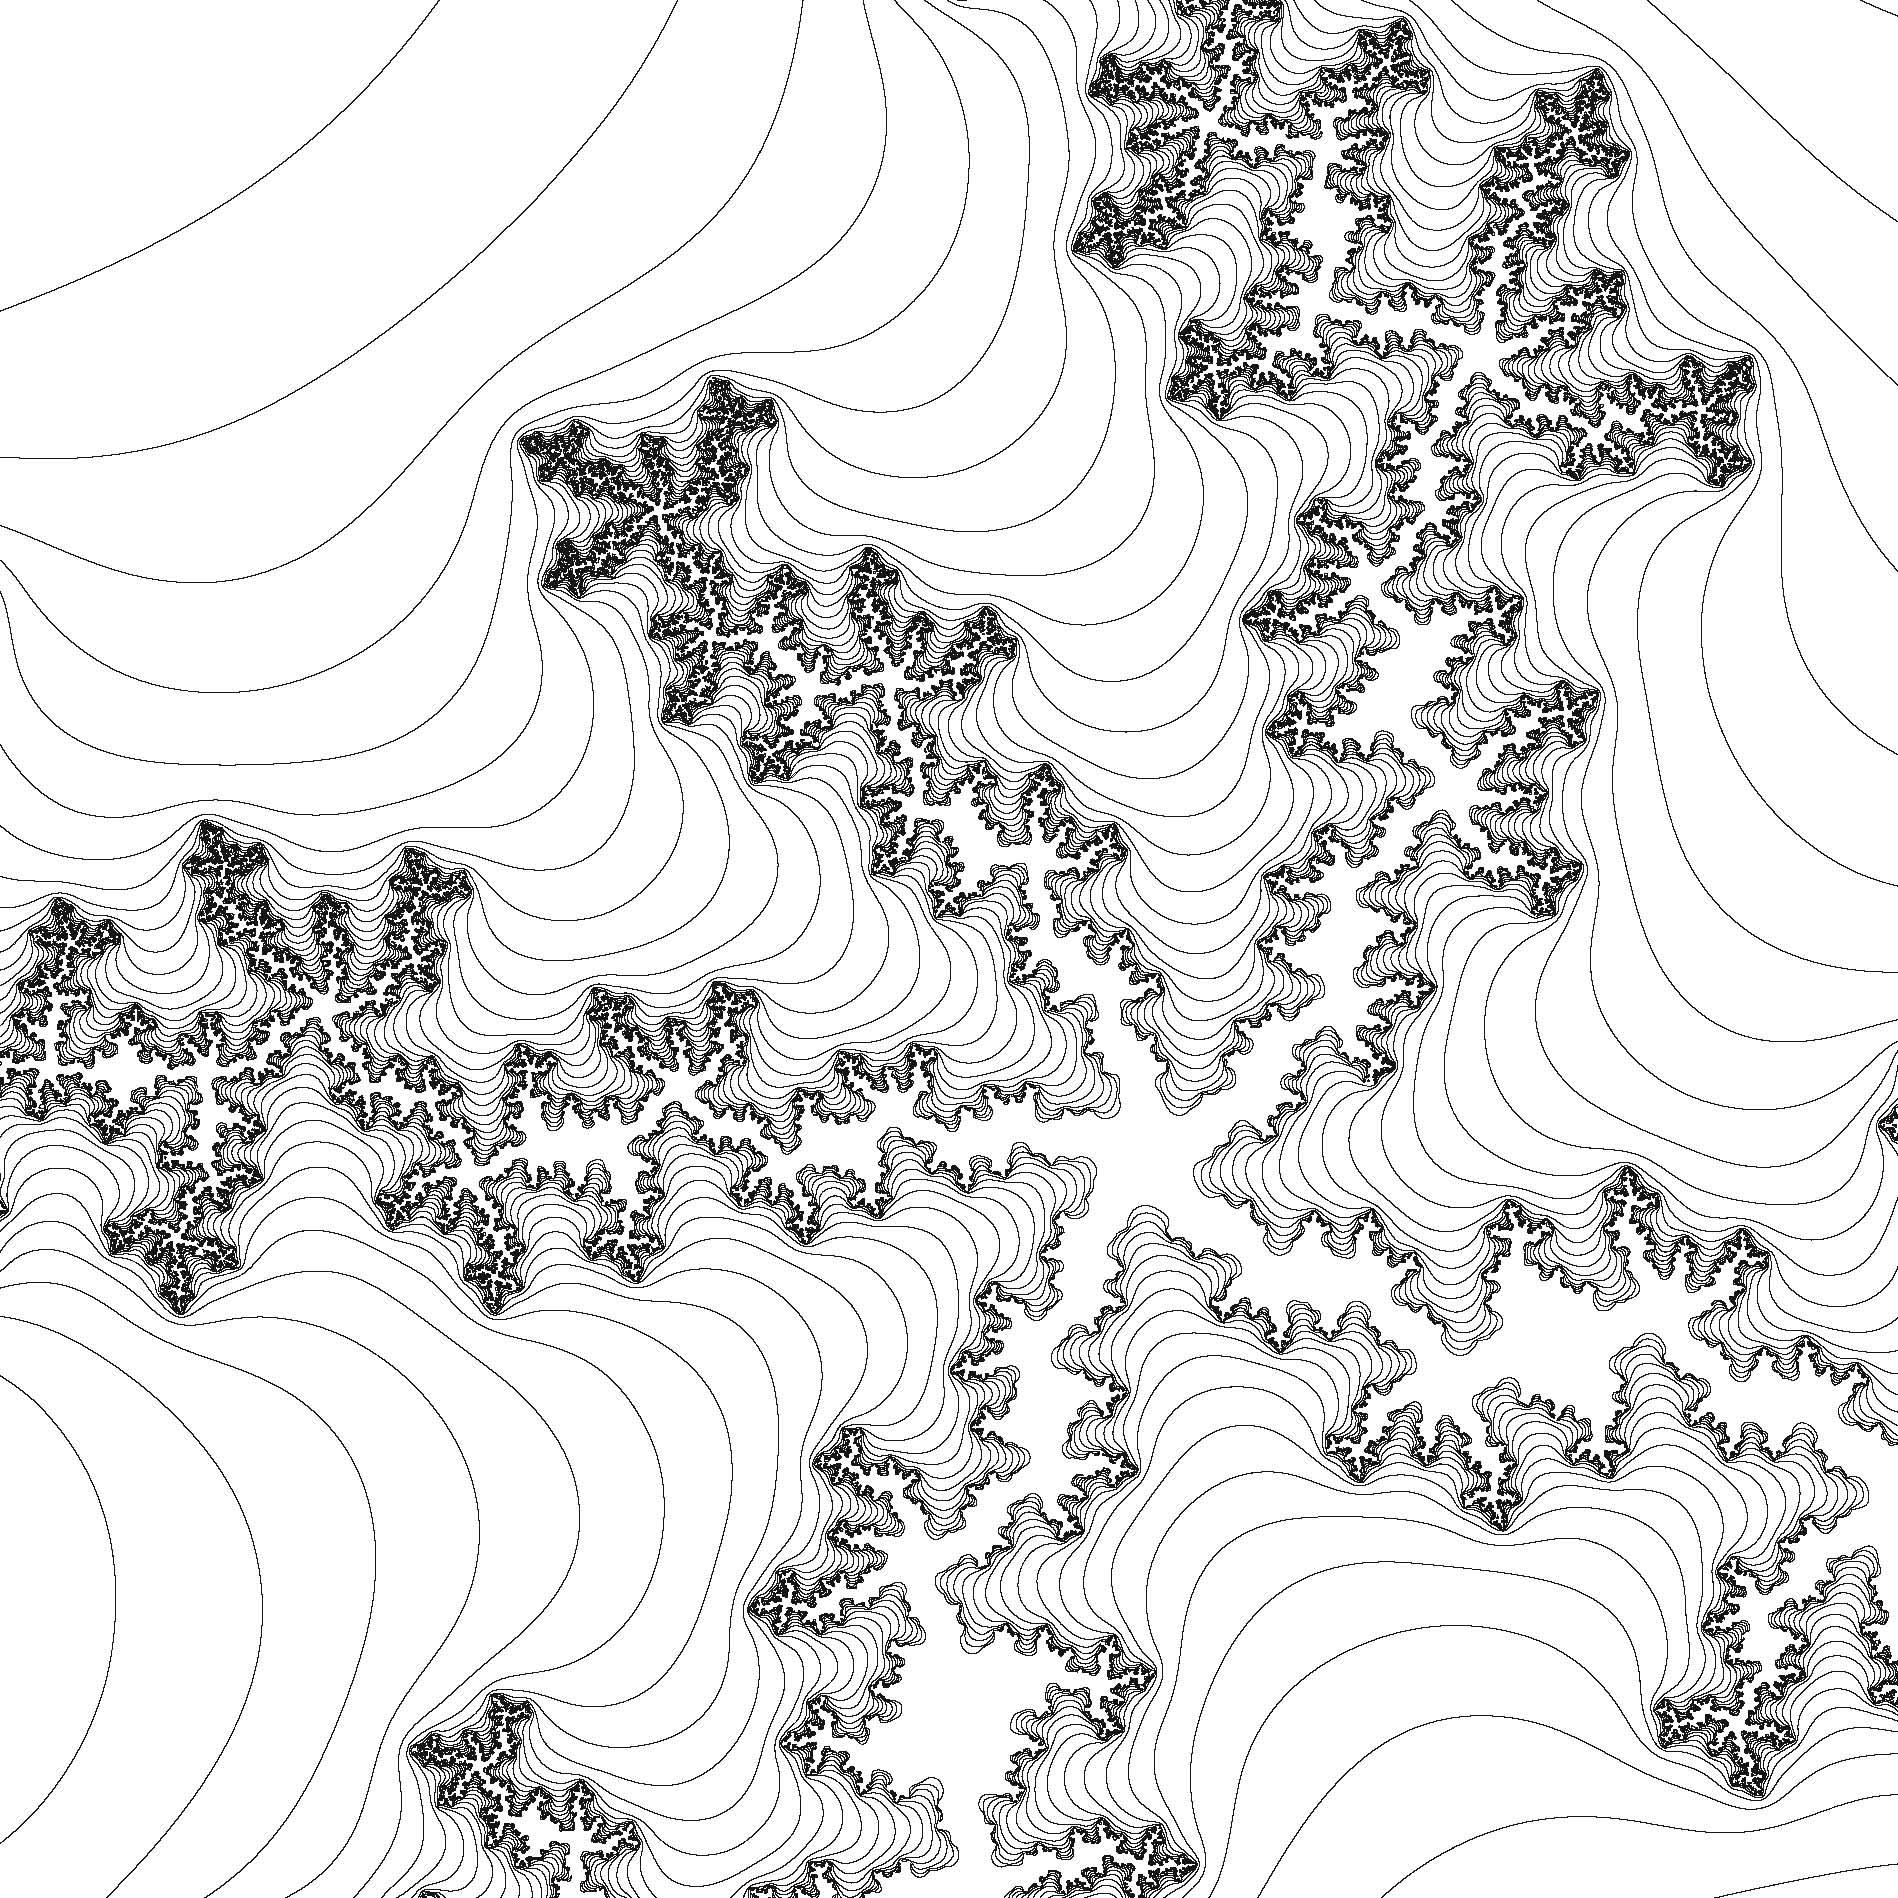 A fractal named after Benoit Mandelbrot